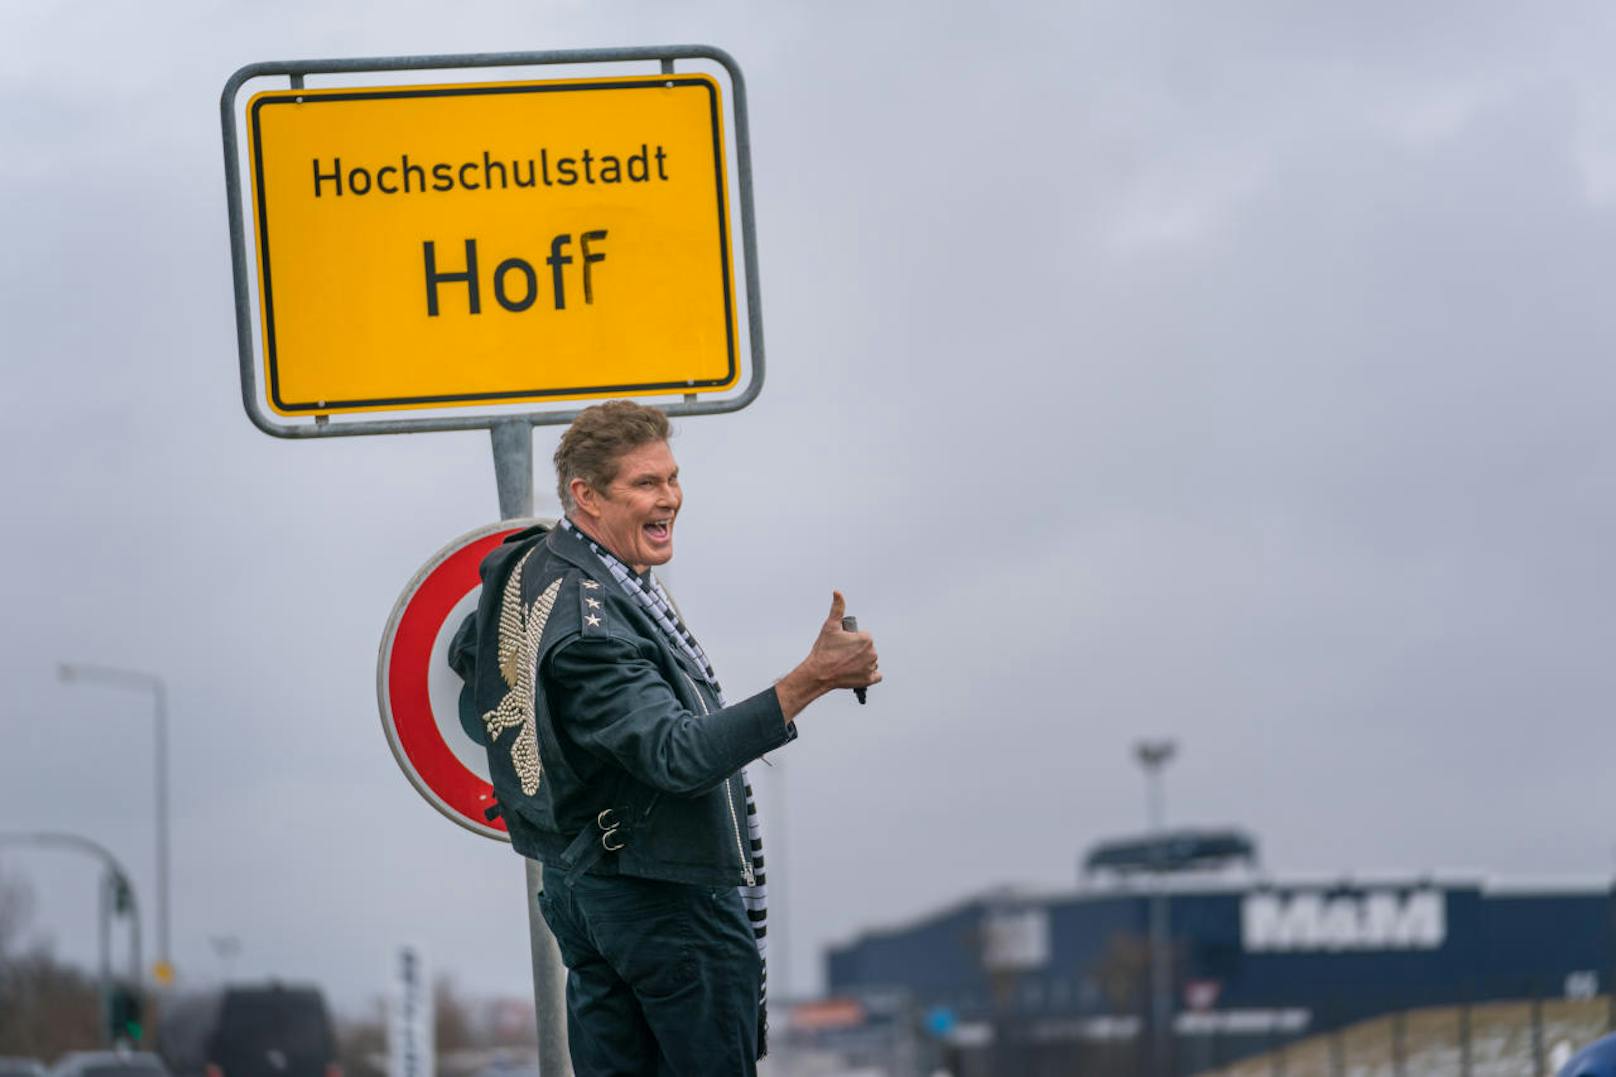 Hof in Deutschland: Ex-Baywatch-Badewaschl David Hasselhoff hat bei der Sachbeschädigung sichtlich Spaß. Die Polizei war übrigens vorher informiert.